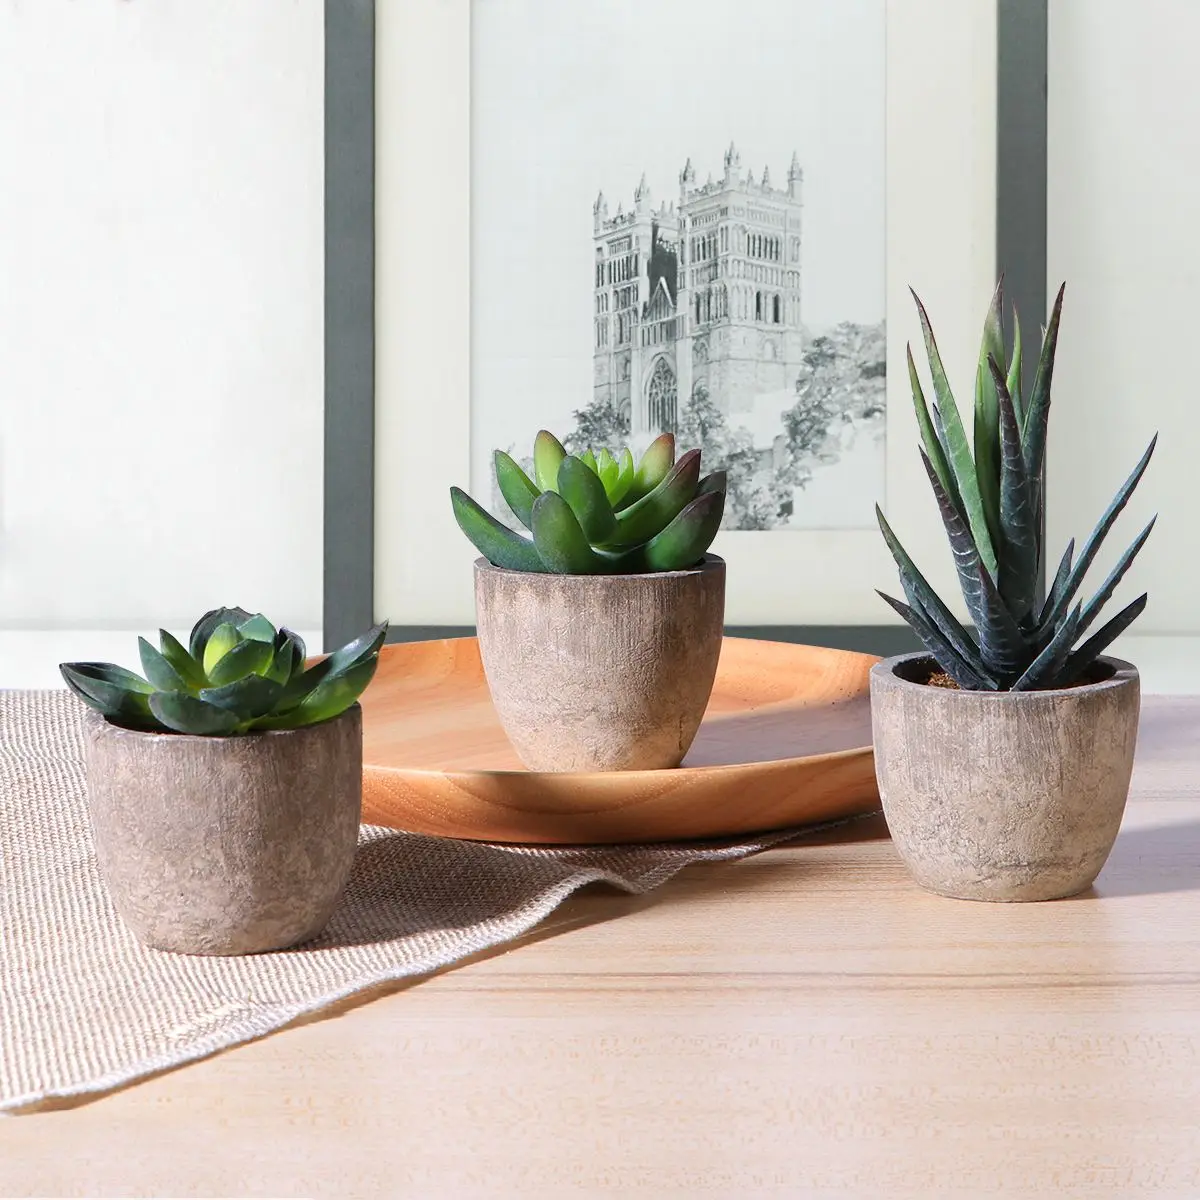 Fake Artificial Succulent Plants Bonsai with Gray Pots Potted Plant Arrangements Artificial Plants Home Decoration images - 6